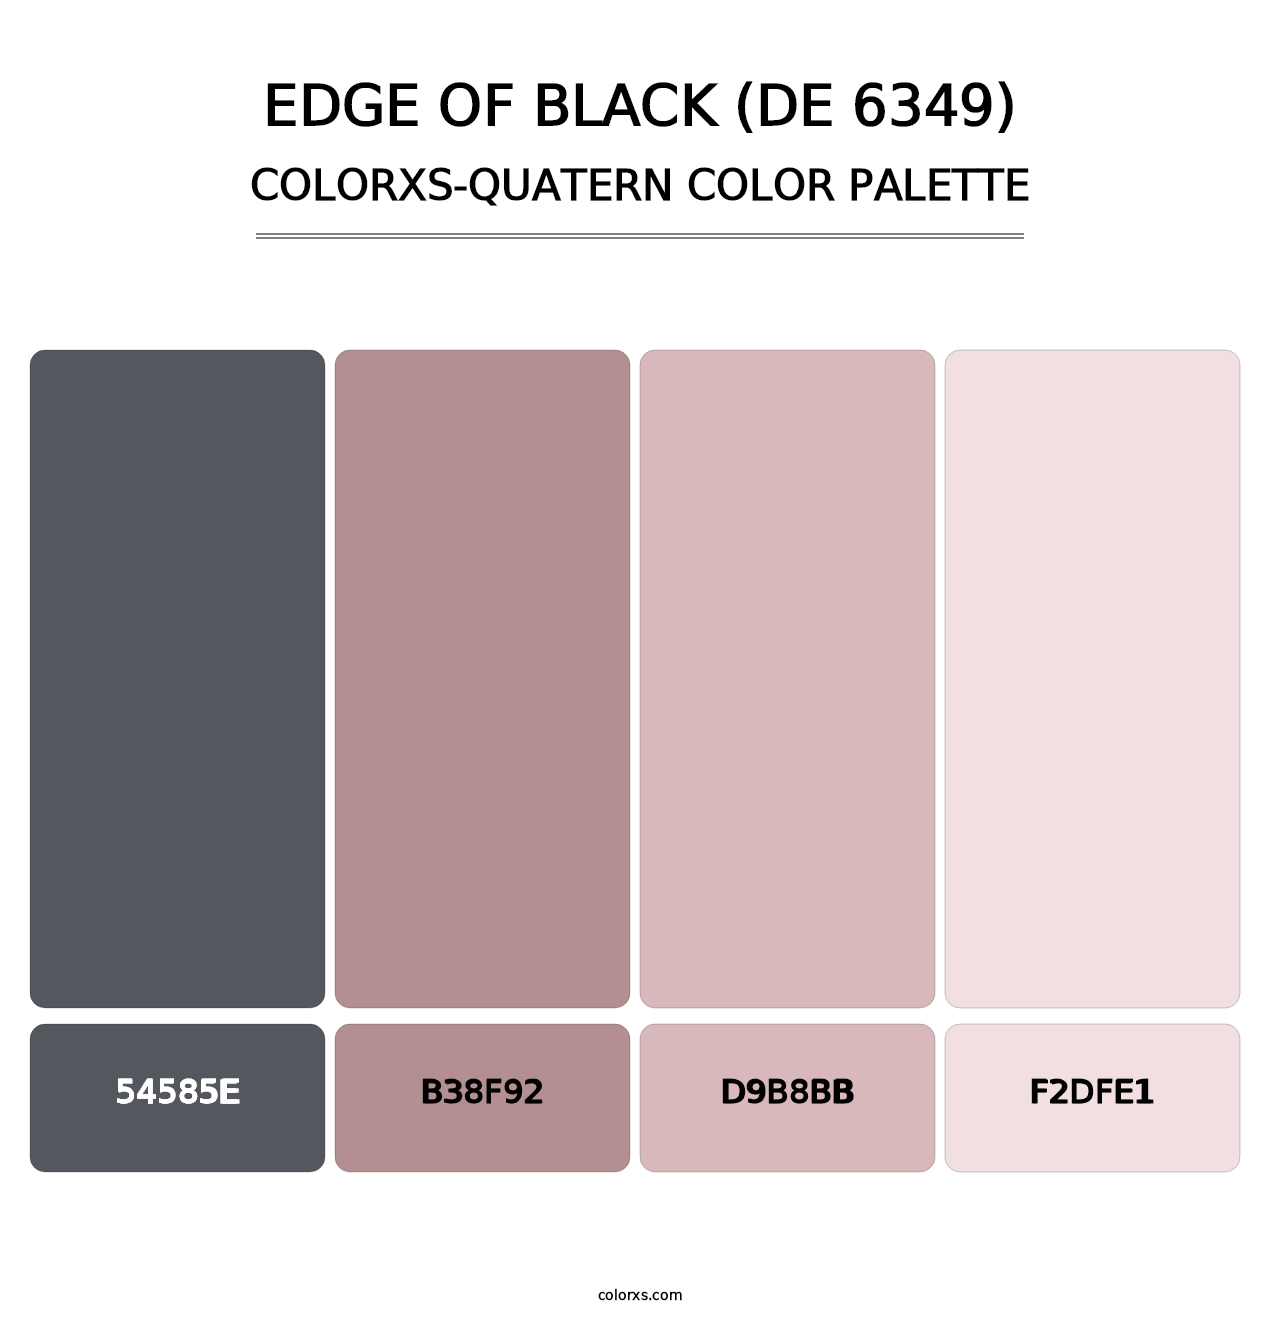 Edge of Black (DE 6349) - Colorxs Quatern Palette